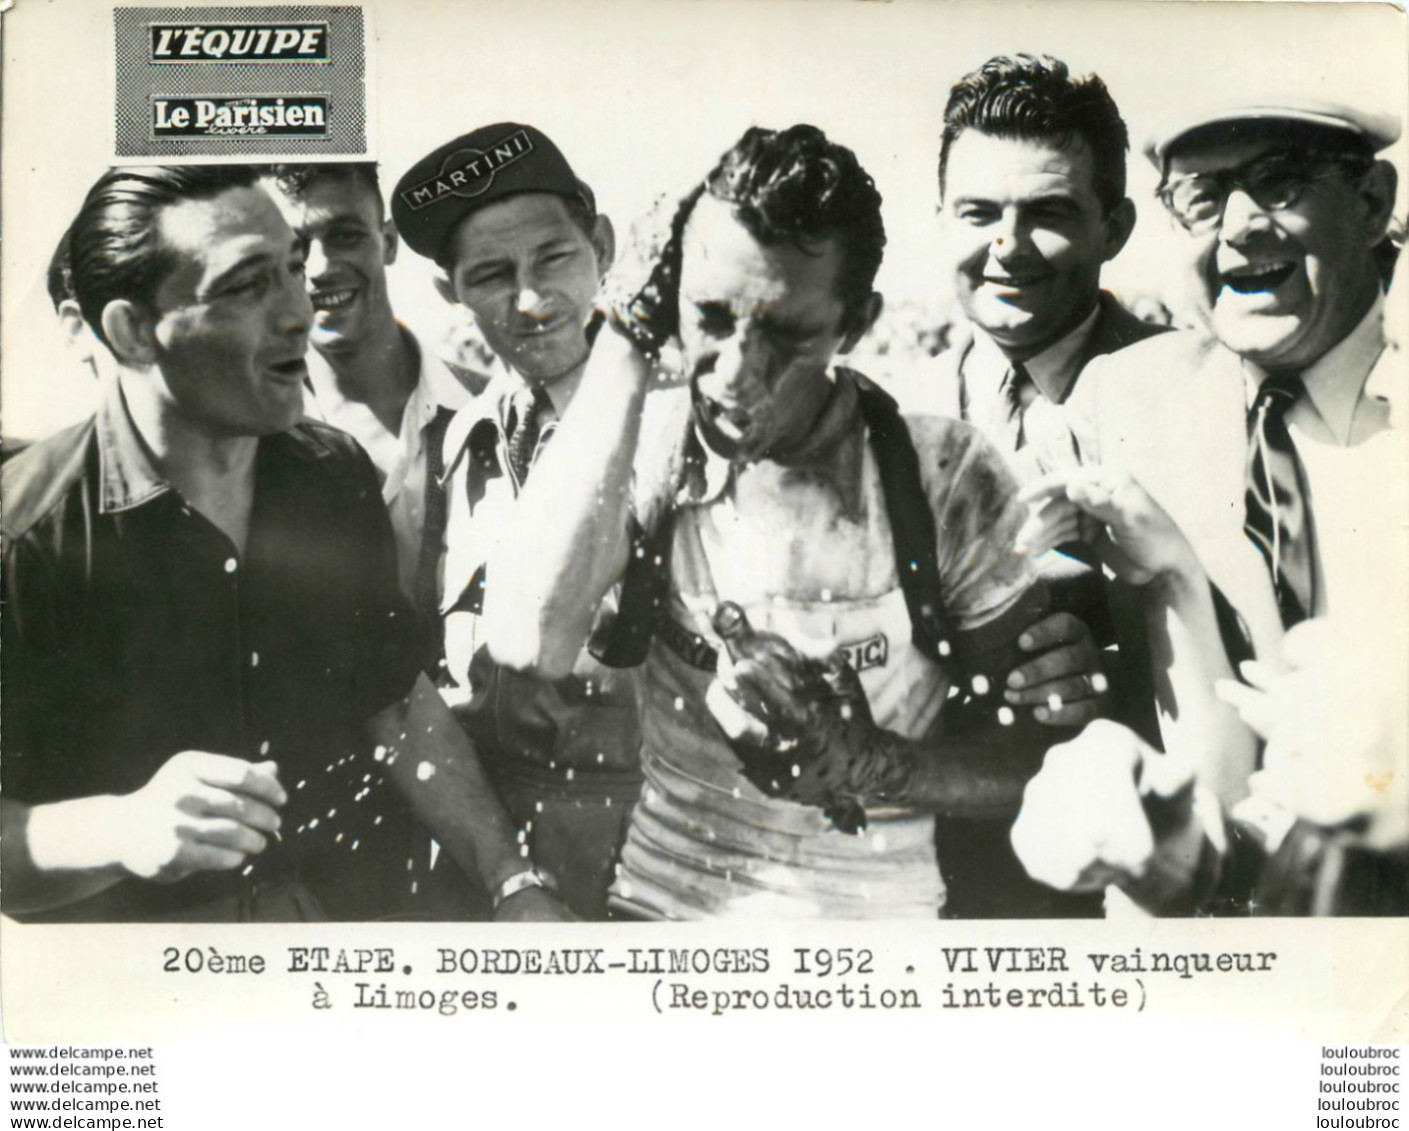 TOUR DE FRANCE 1952 VIVIER VAINQUEUR A LIMOGES 20èm ETAPE PHOTO PRESSE ORIGINALE ARGENTIQUE  20X15CM EQUIPE  LE PARISIEN - Sports